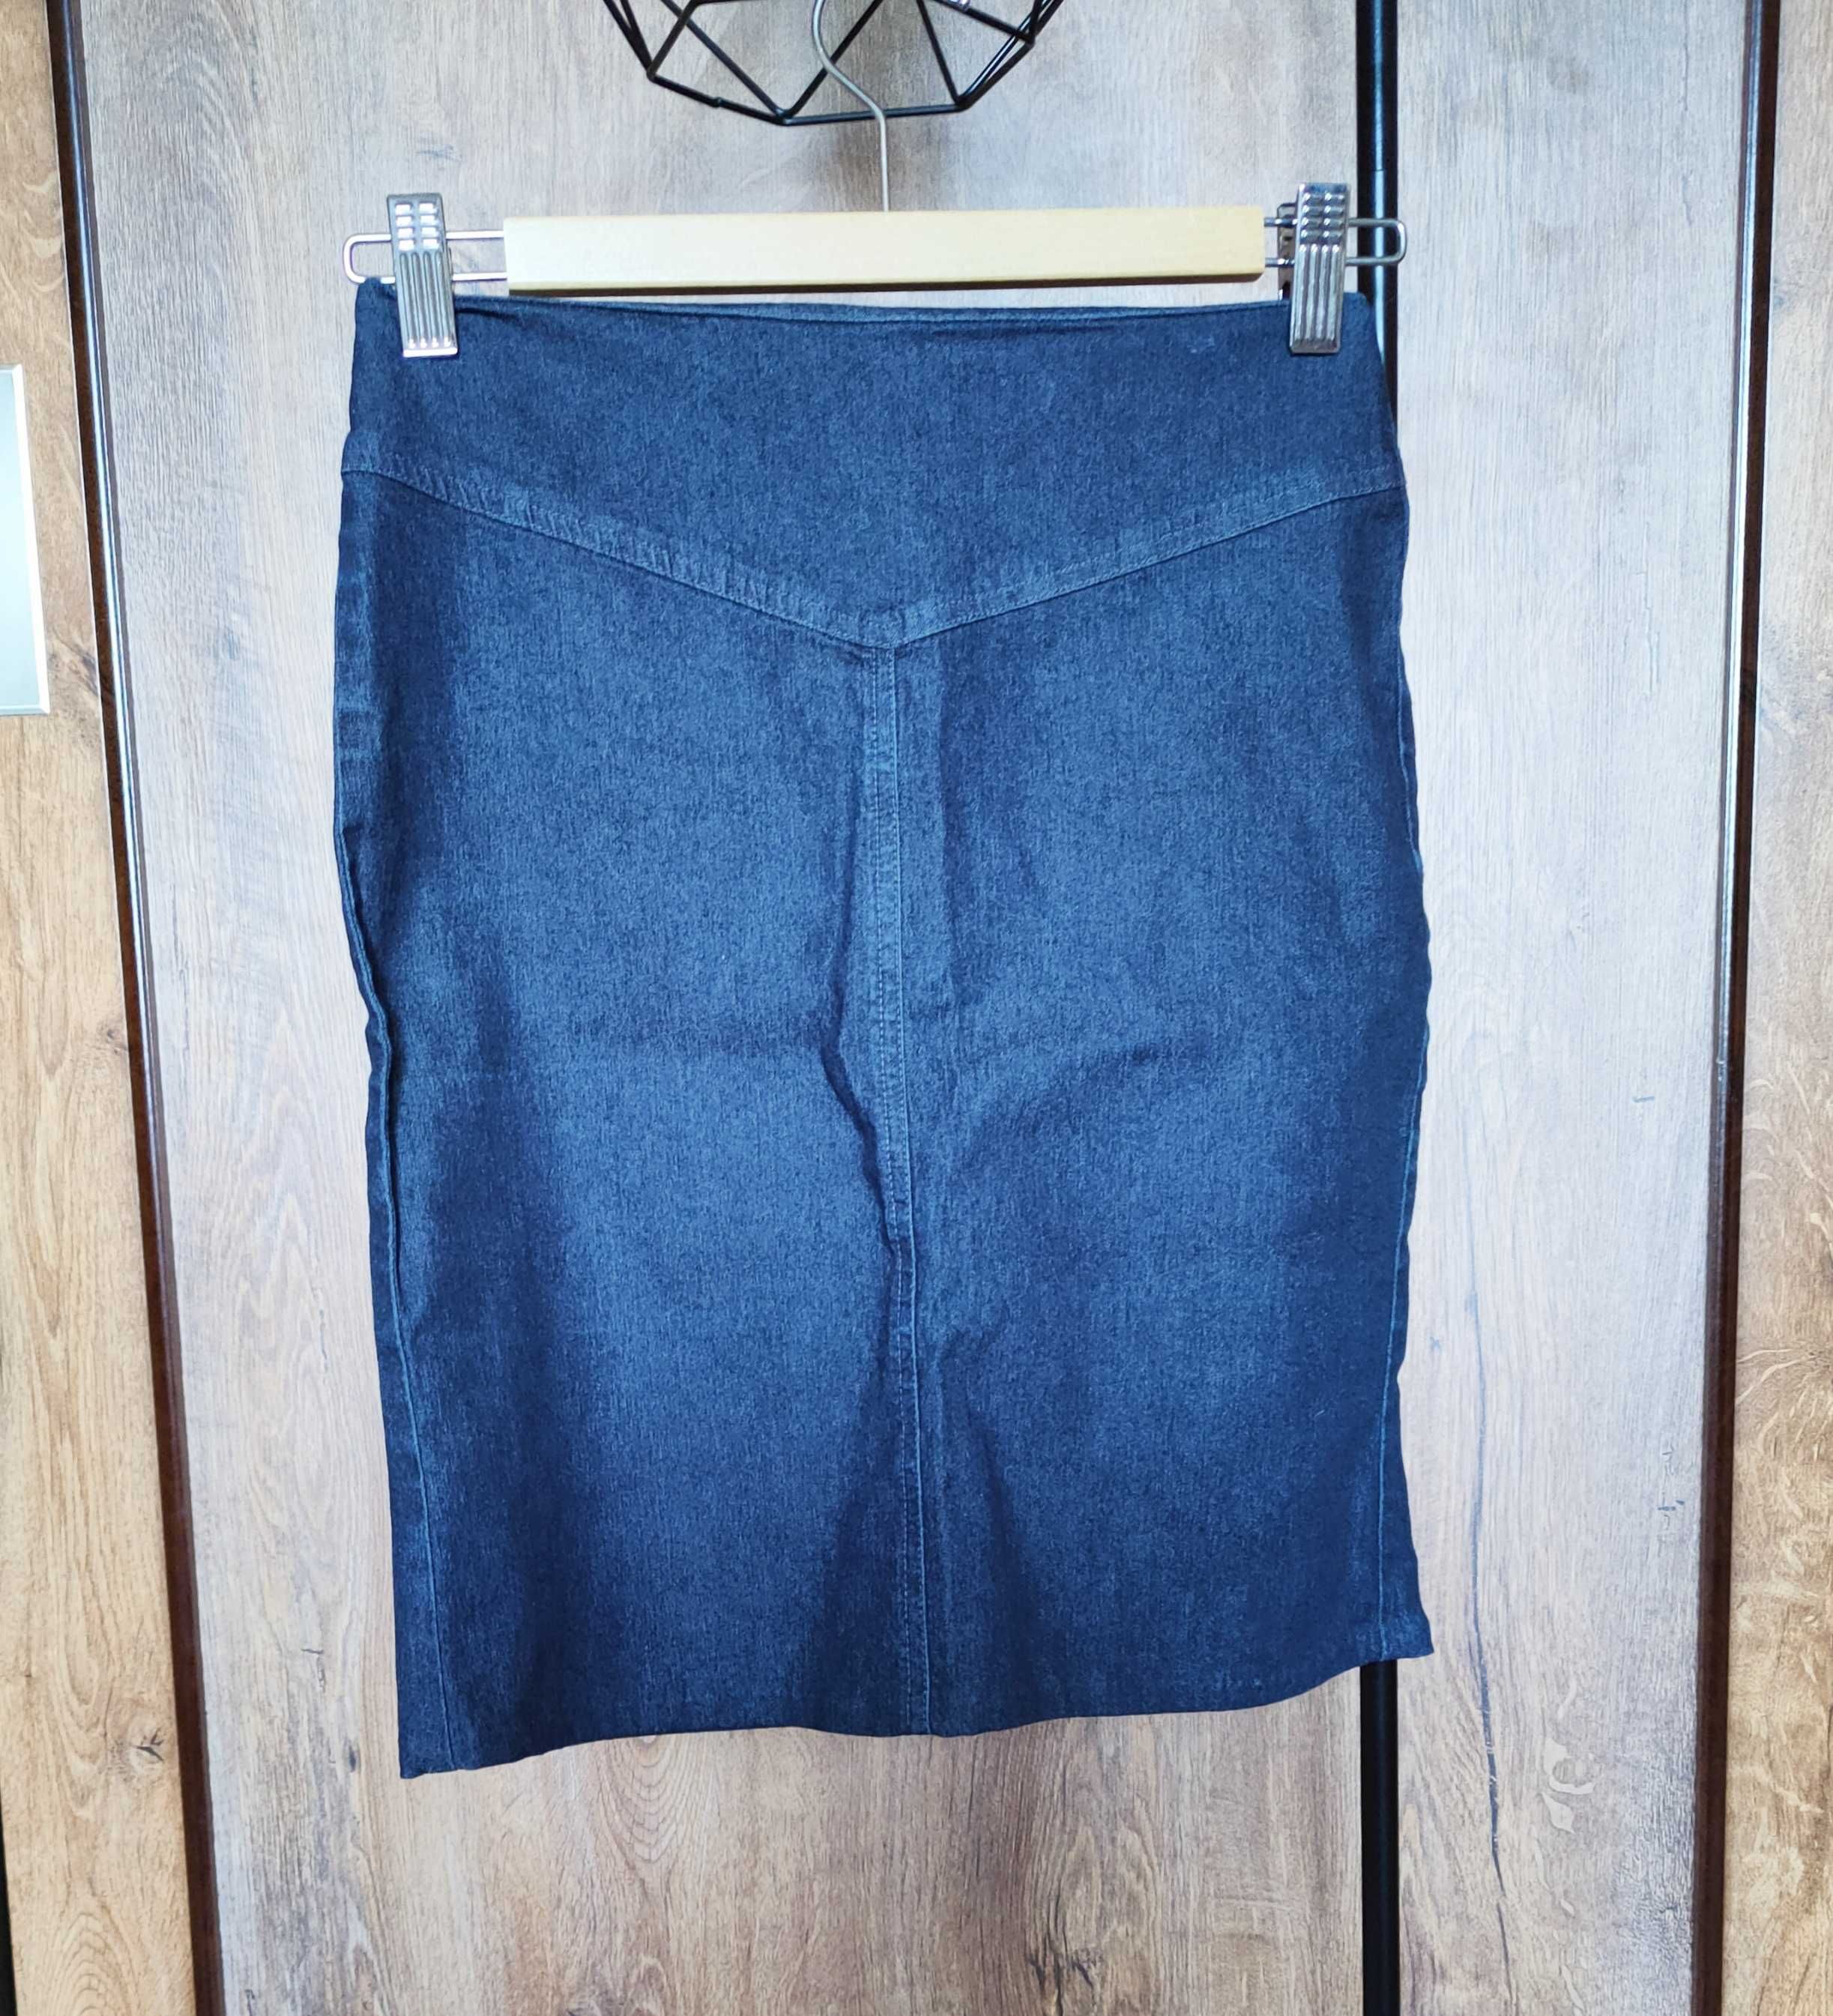 spódnica granatowa dżinsowa jeansowa xs 34